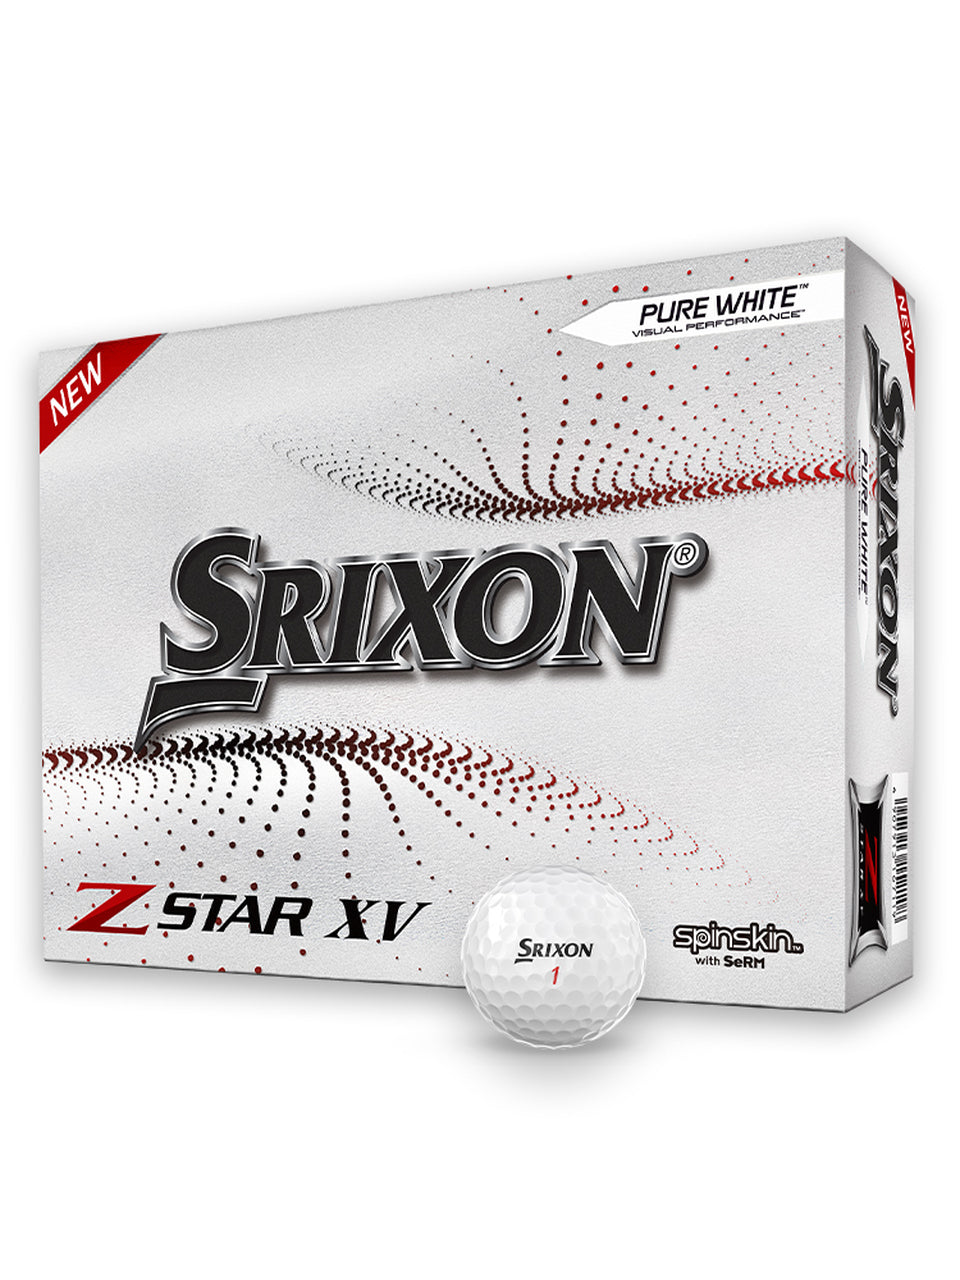 Srixon Z-Star XV Golf Balls - 1 Dozen White 2021